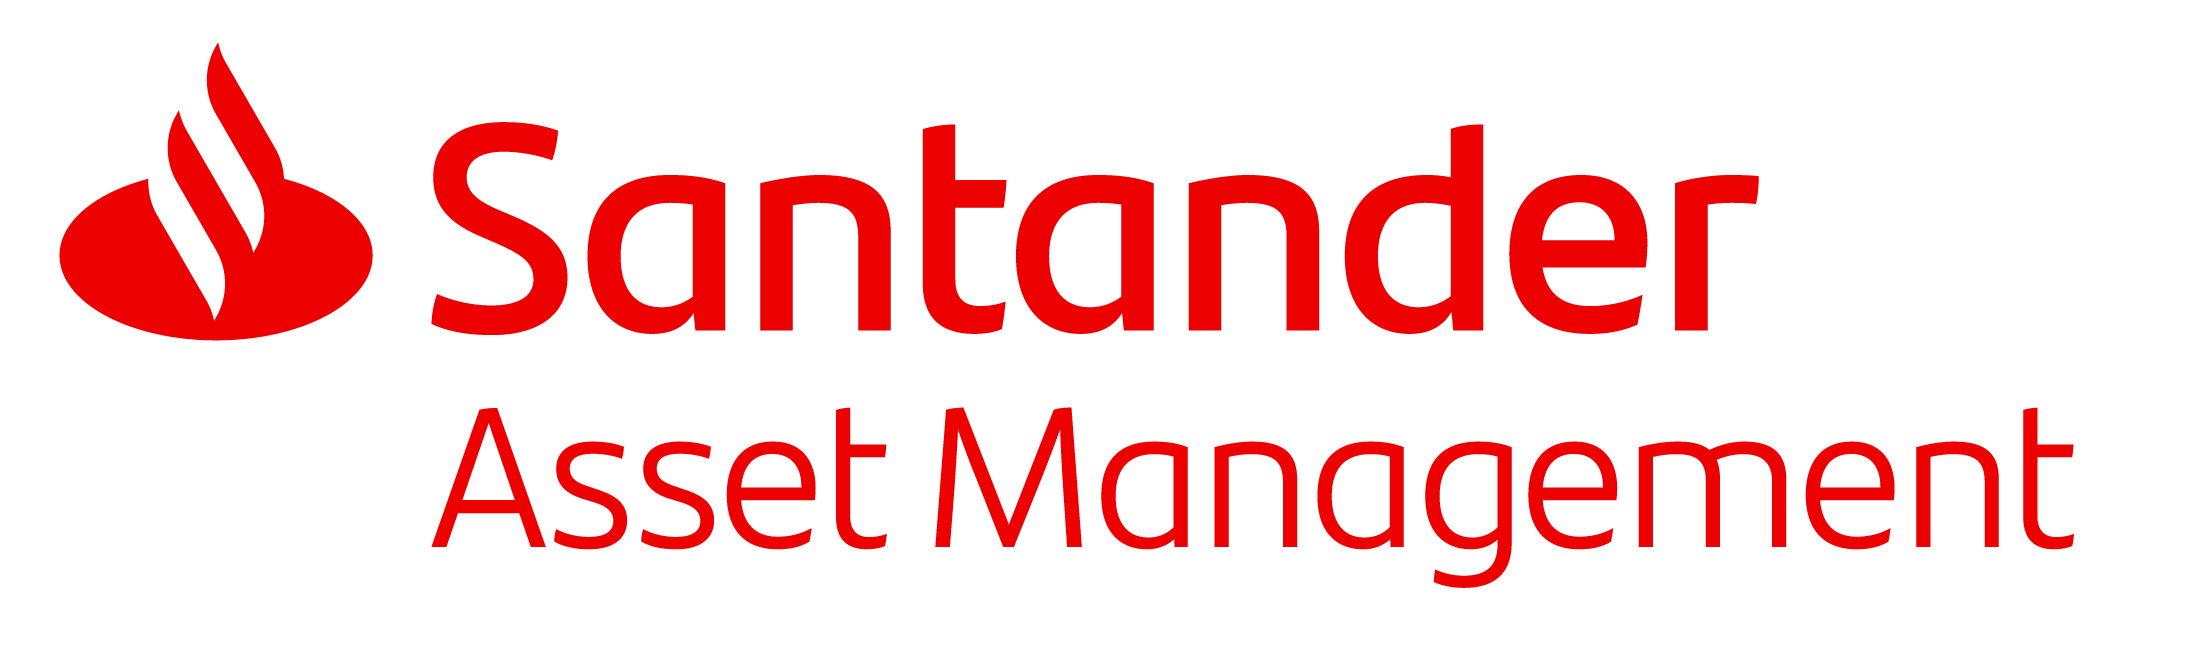 Santander Asset Management Logo HQ v2